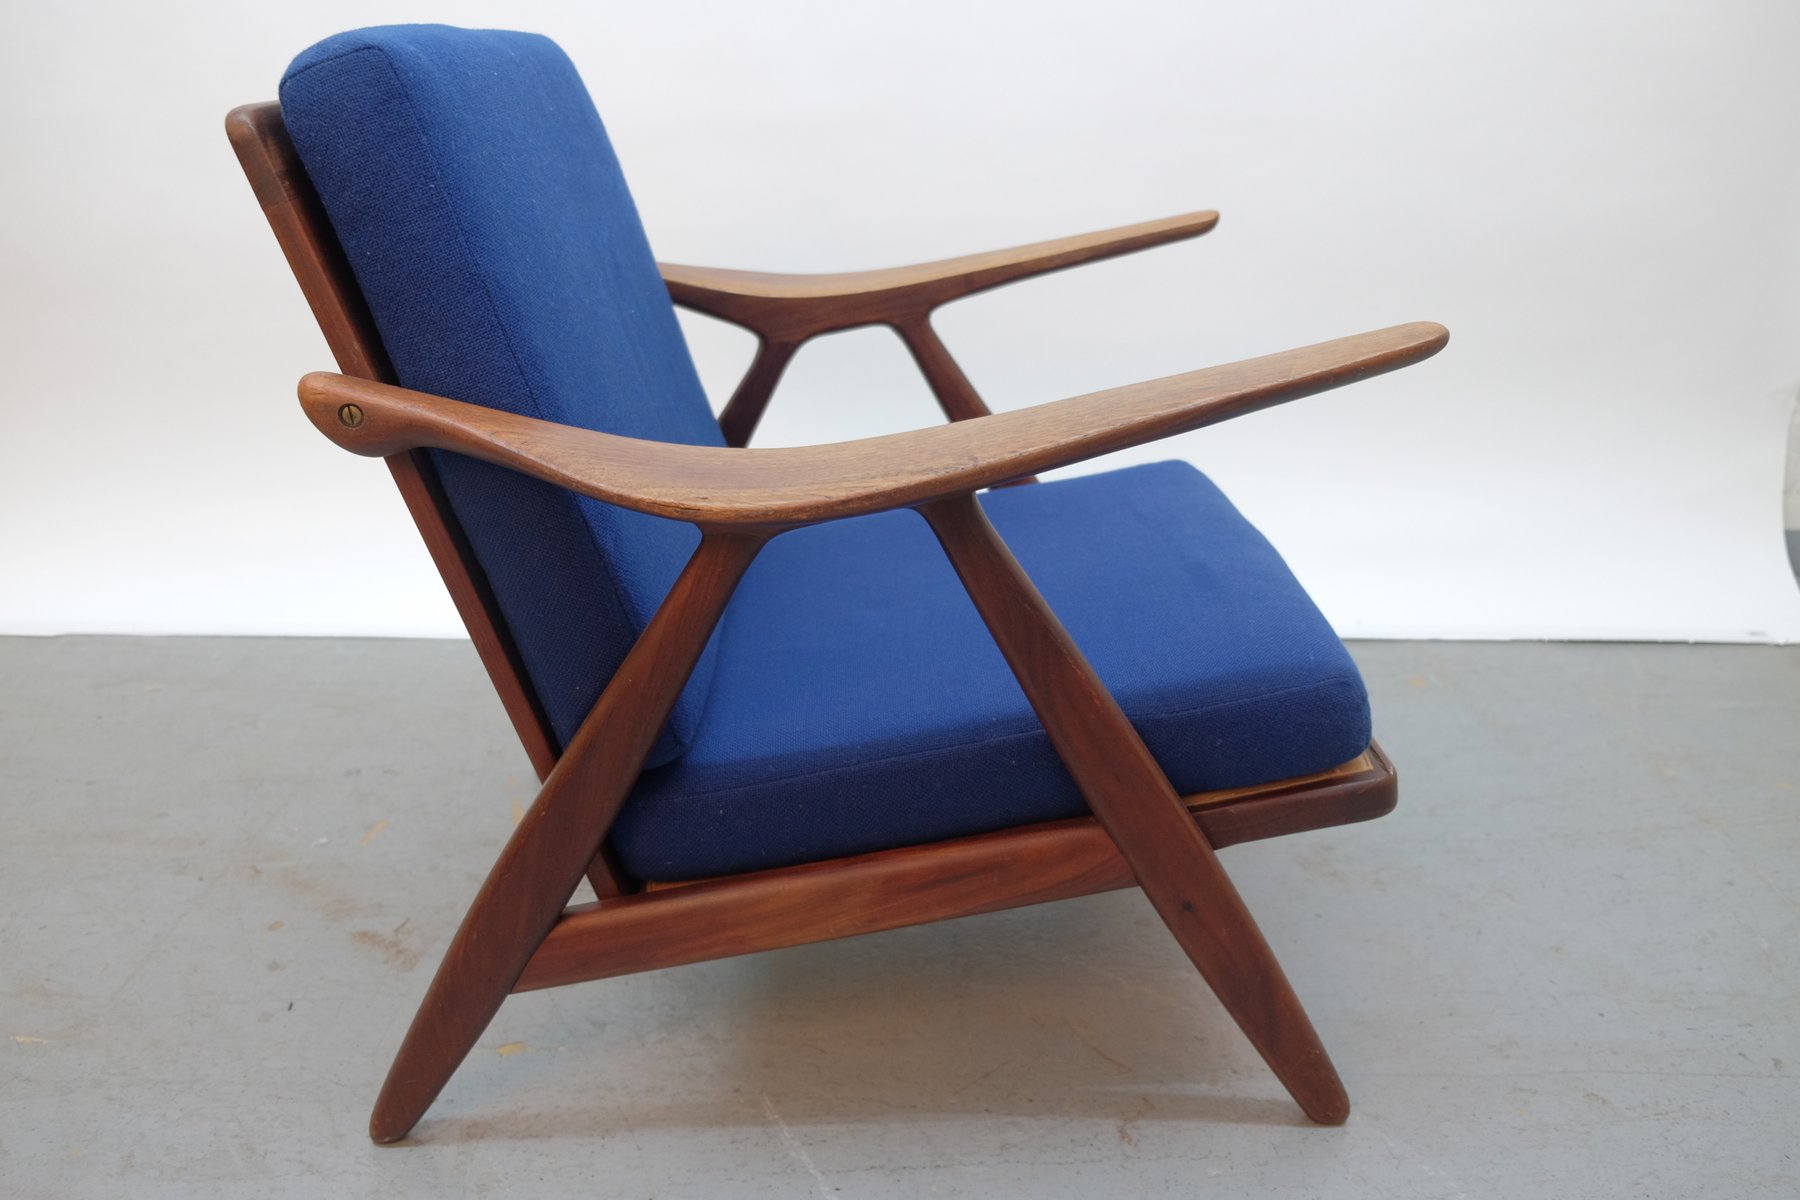 Dänischer moderner Vintage Sessel mit gebogenen Armlehnen